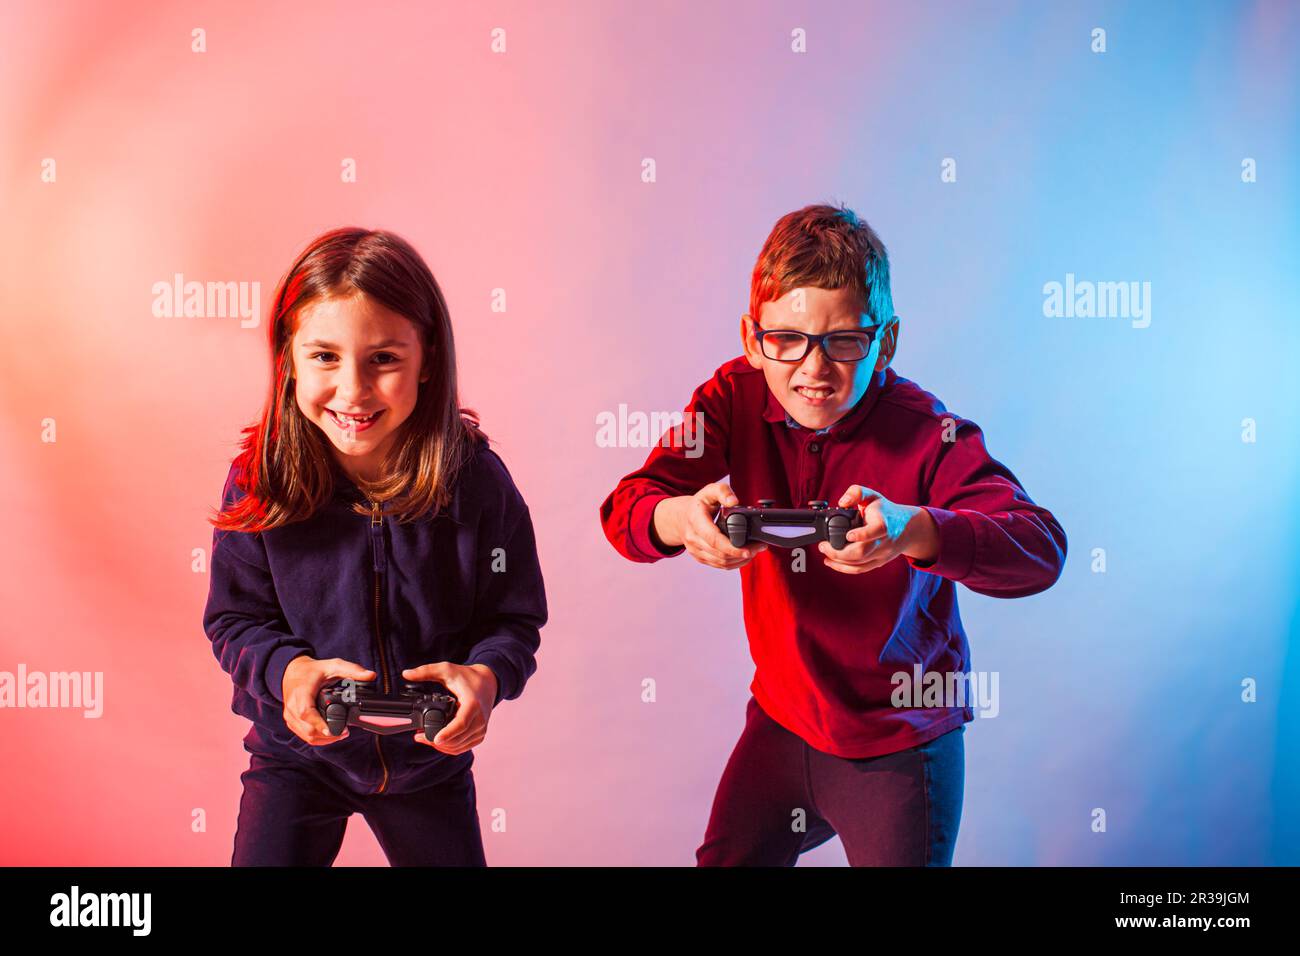 Les enfants excités avec des joysticks jouant à un jeu virtuel intéressant Banque D'Images